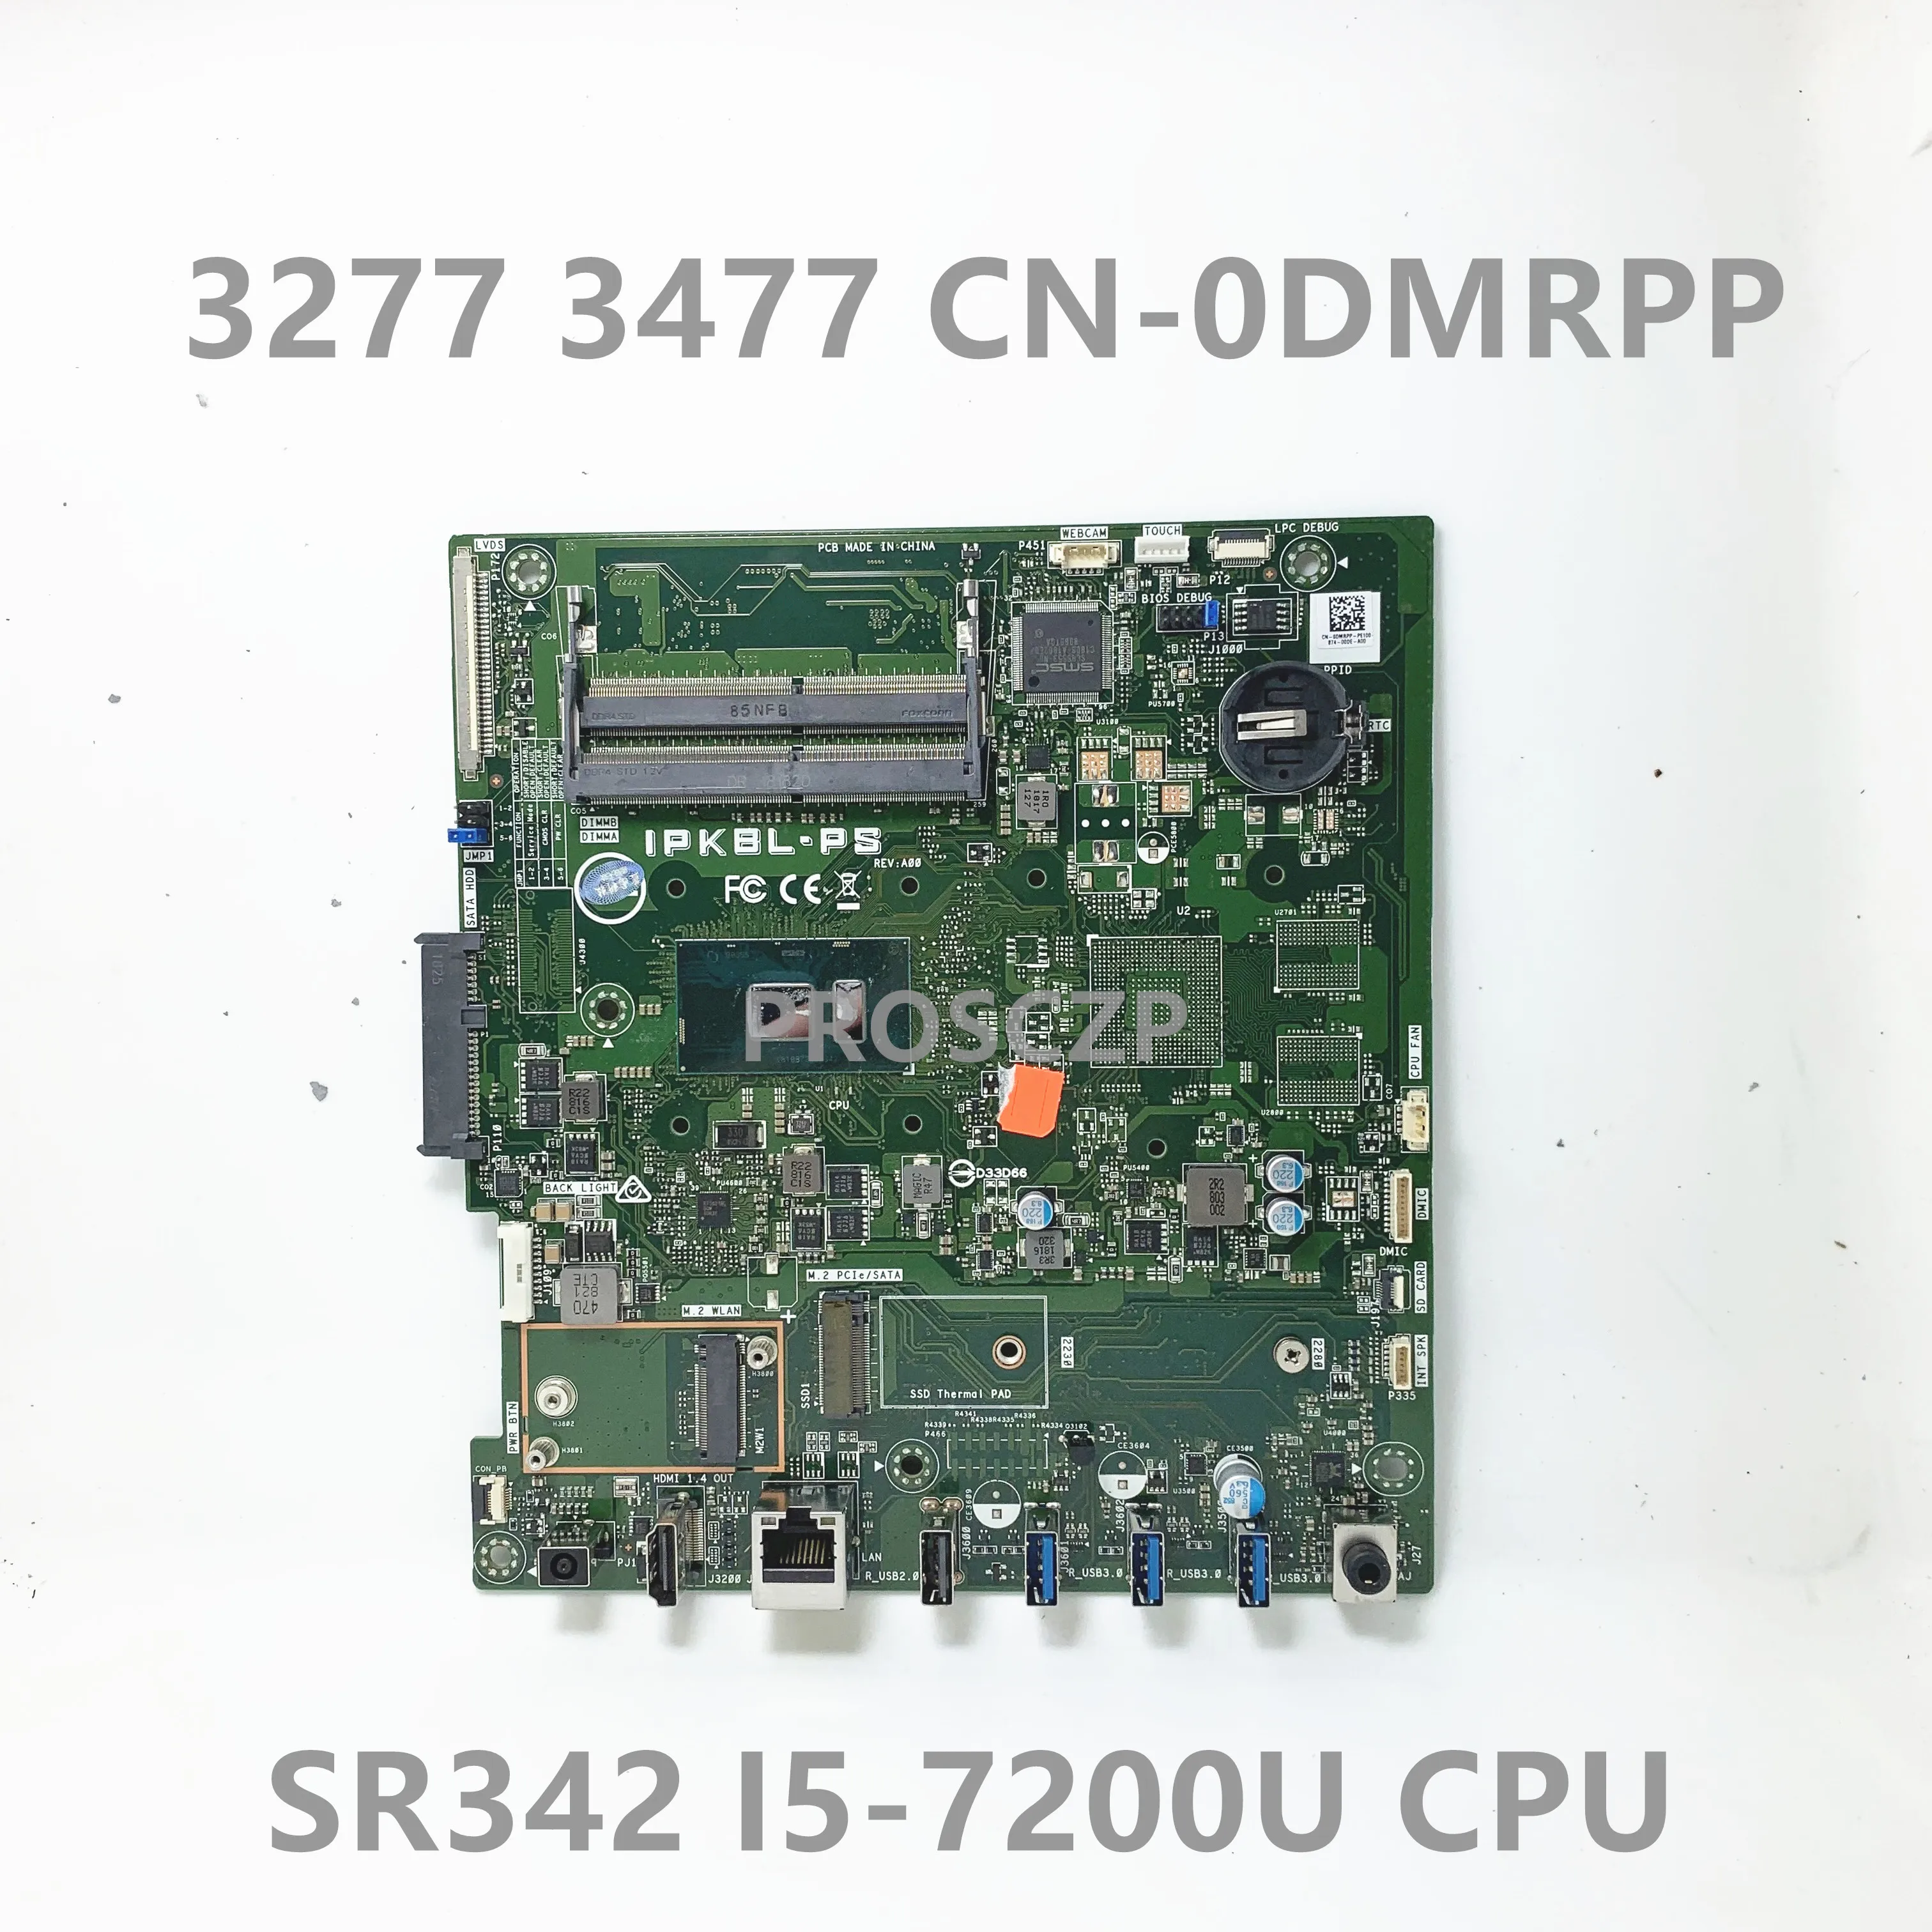 CN-0DMRPP 0DMRPP DMRPP Высококачественная Материнская Плата Для Ноутбука Dell 3277 3477 Материнская Плата SR342 i5-7200U Процессор 100% Полностью Работает Хорошо